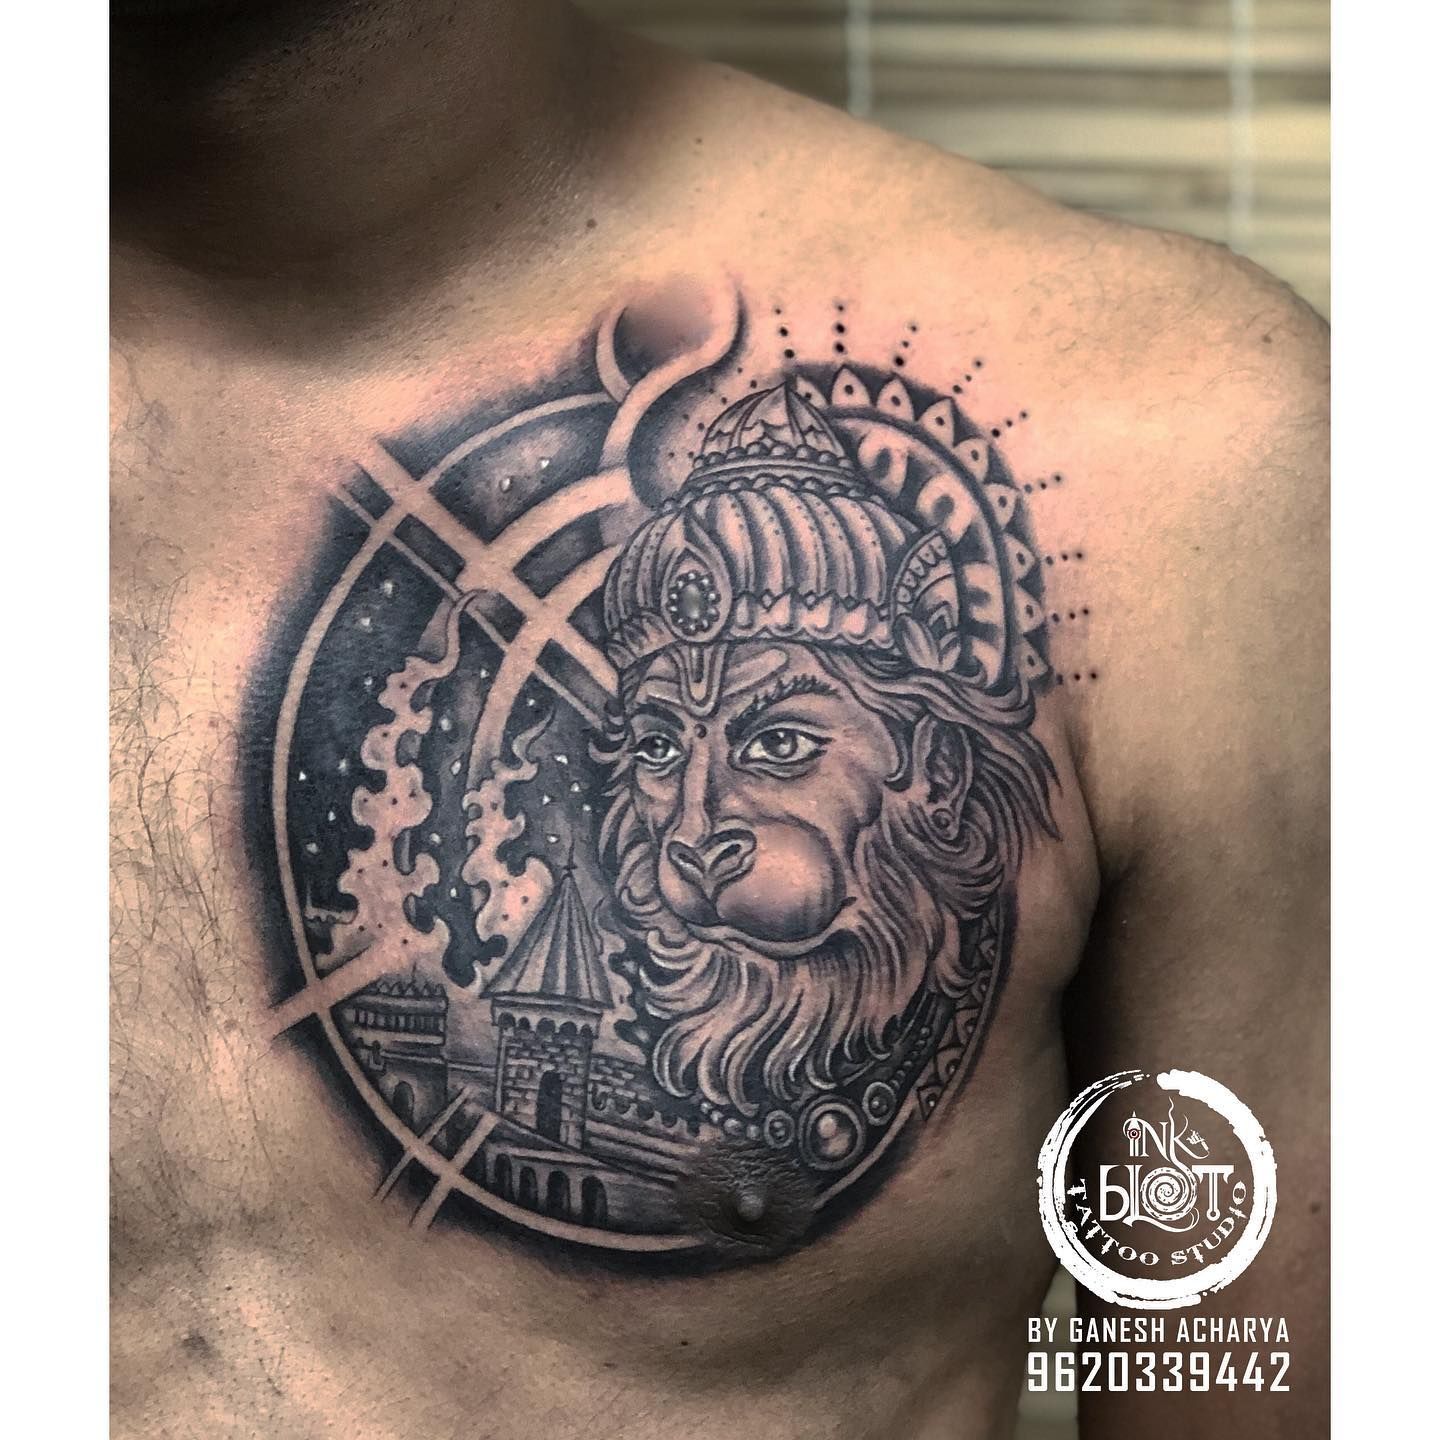 Hawk Tattoo Delhi - Ring @hawktattoodelhi Jai Hanuman Tattoo #hanuman # tattoo #banumantattoo #hanumatattoo #tattoodesign #tattoos #hindugodtattoo  #tattoodesign #delhitattooartist #delhitattoostudio #hawktattoodelhi  #besttattoostudioindelhi #besttattoos ...